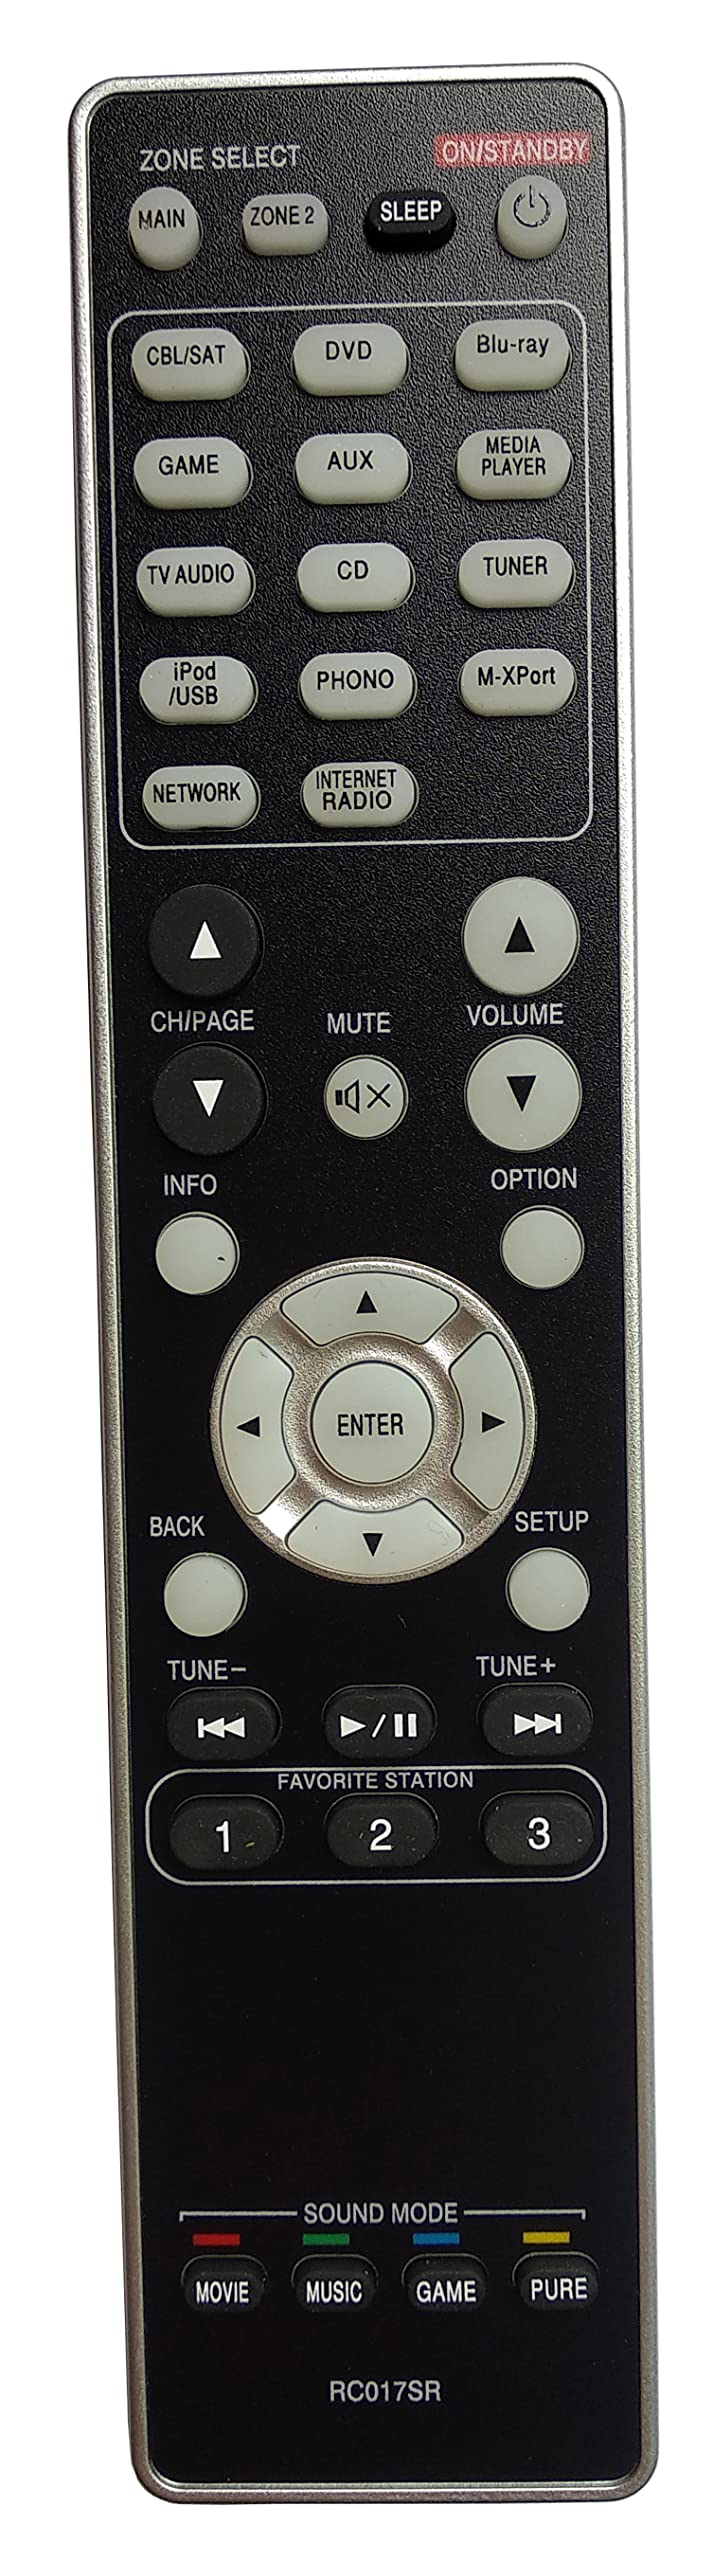  [AUSTRALIA] - Gorilla babo Universal Remote Compatible for MARANTZ RC017SR NR1603 SR5007 SR6007 Audio/Video Receiver Remote Control